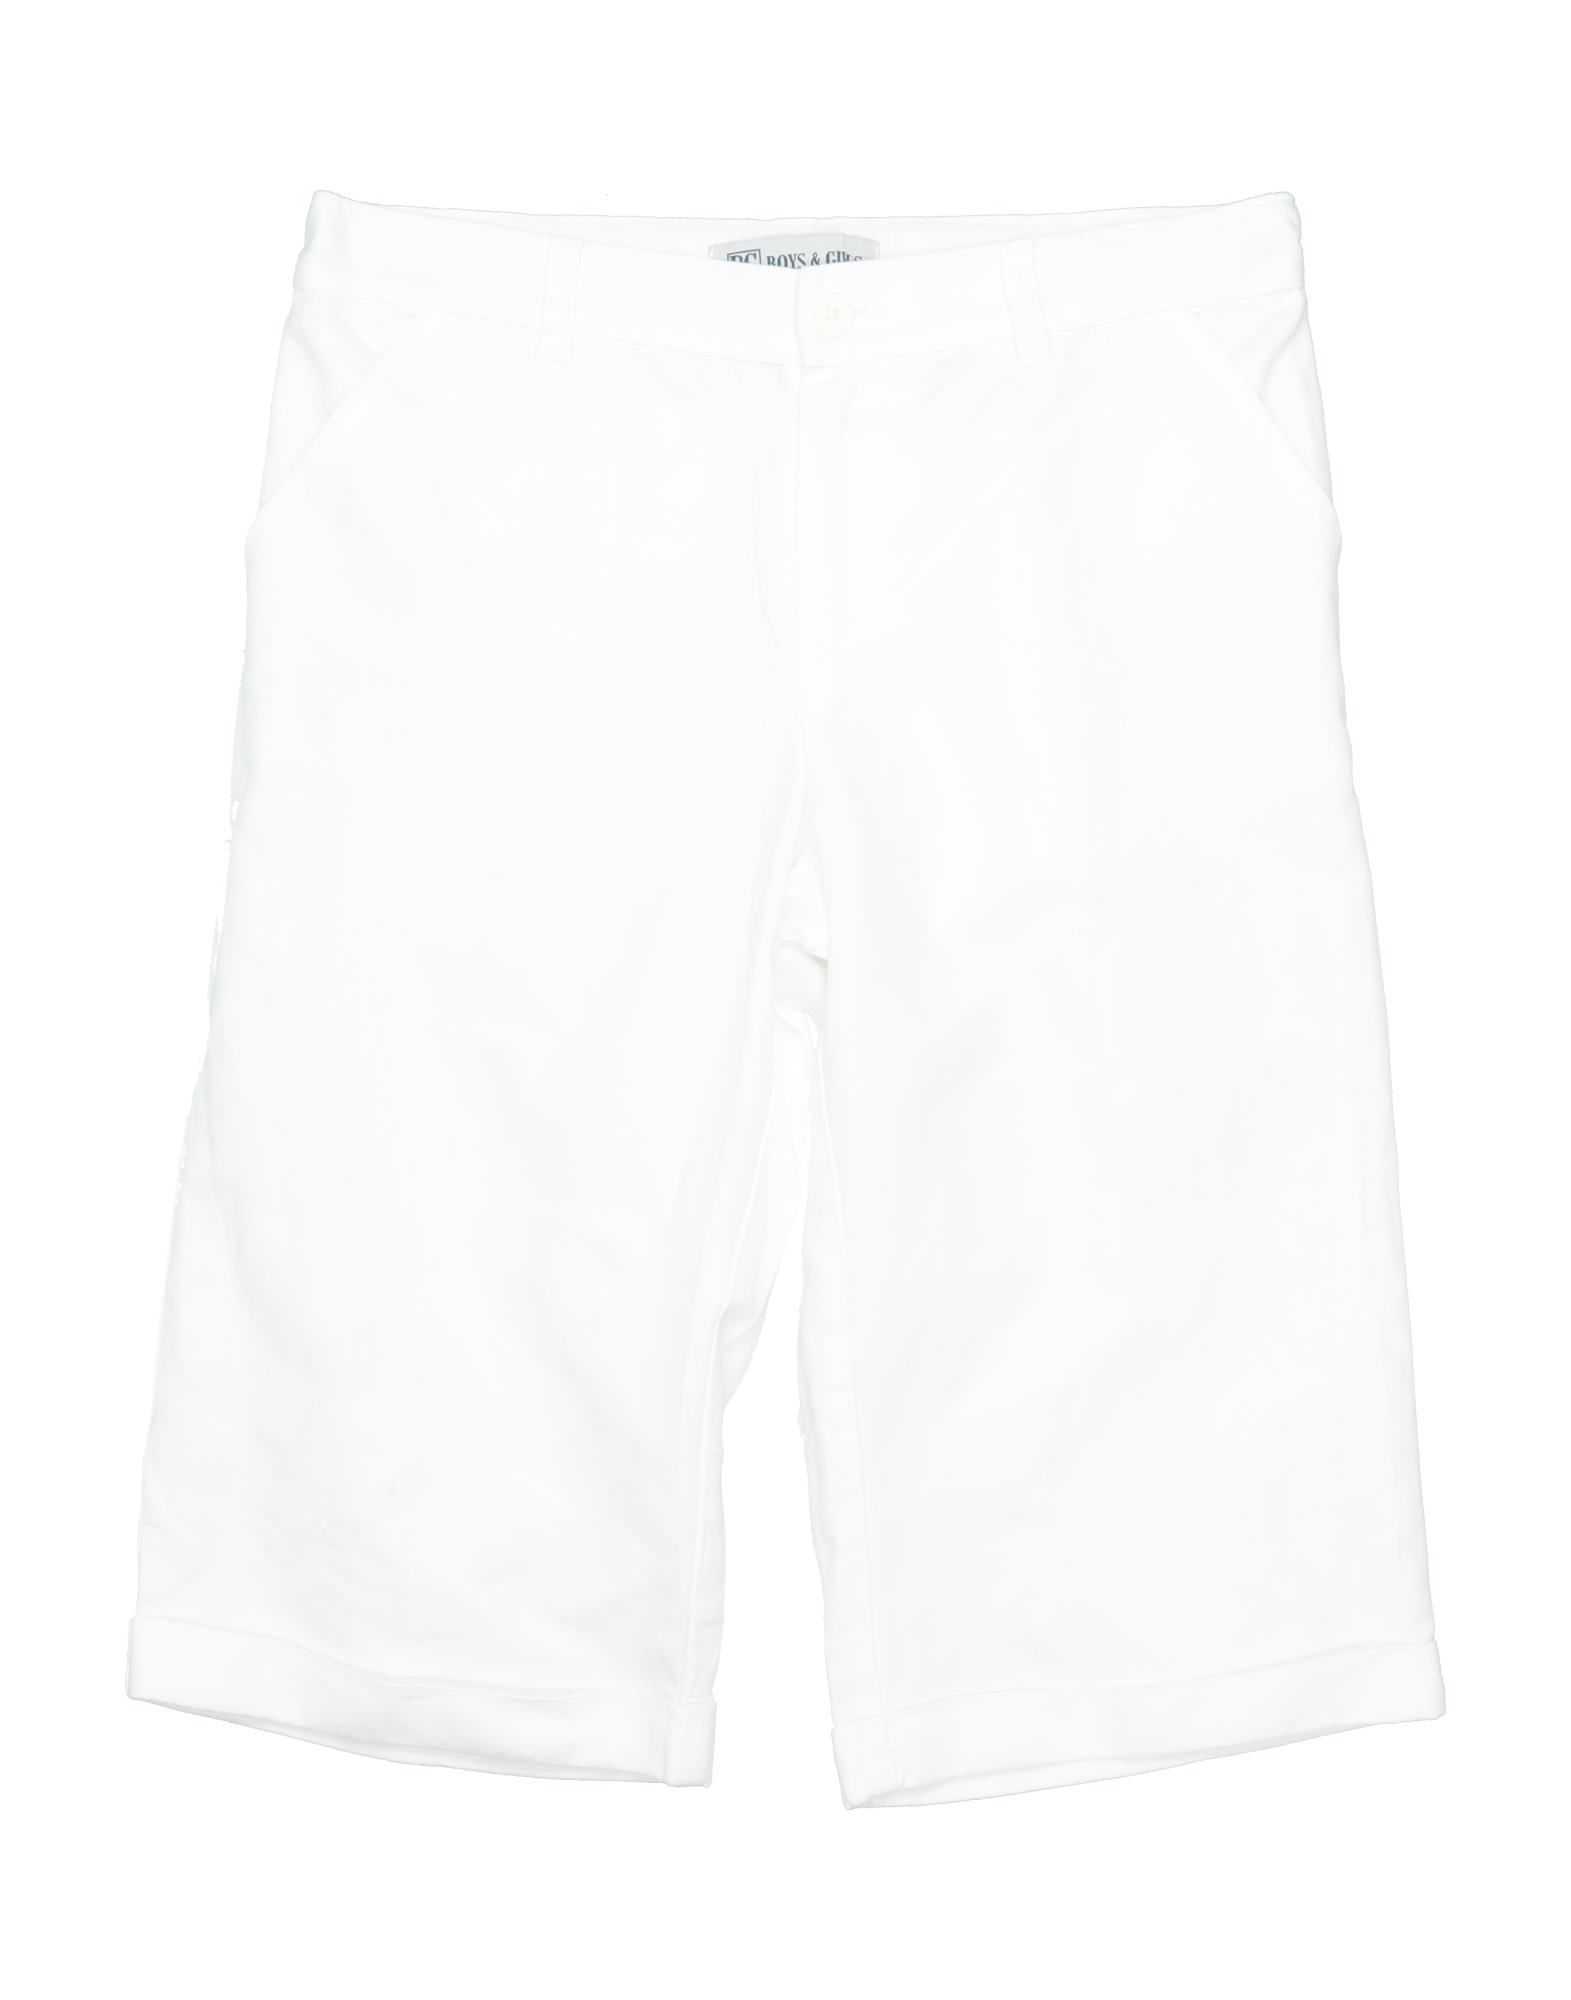 Bg Boys & Girls Kids' Casual Pants In White